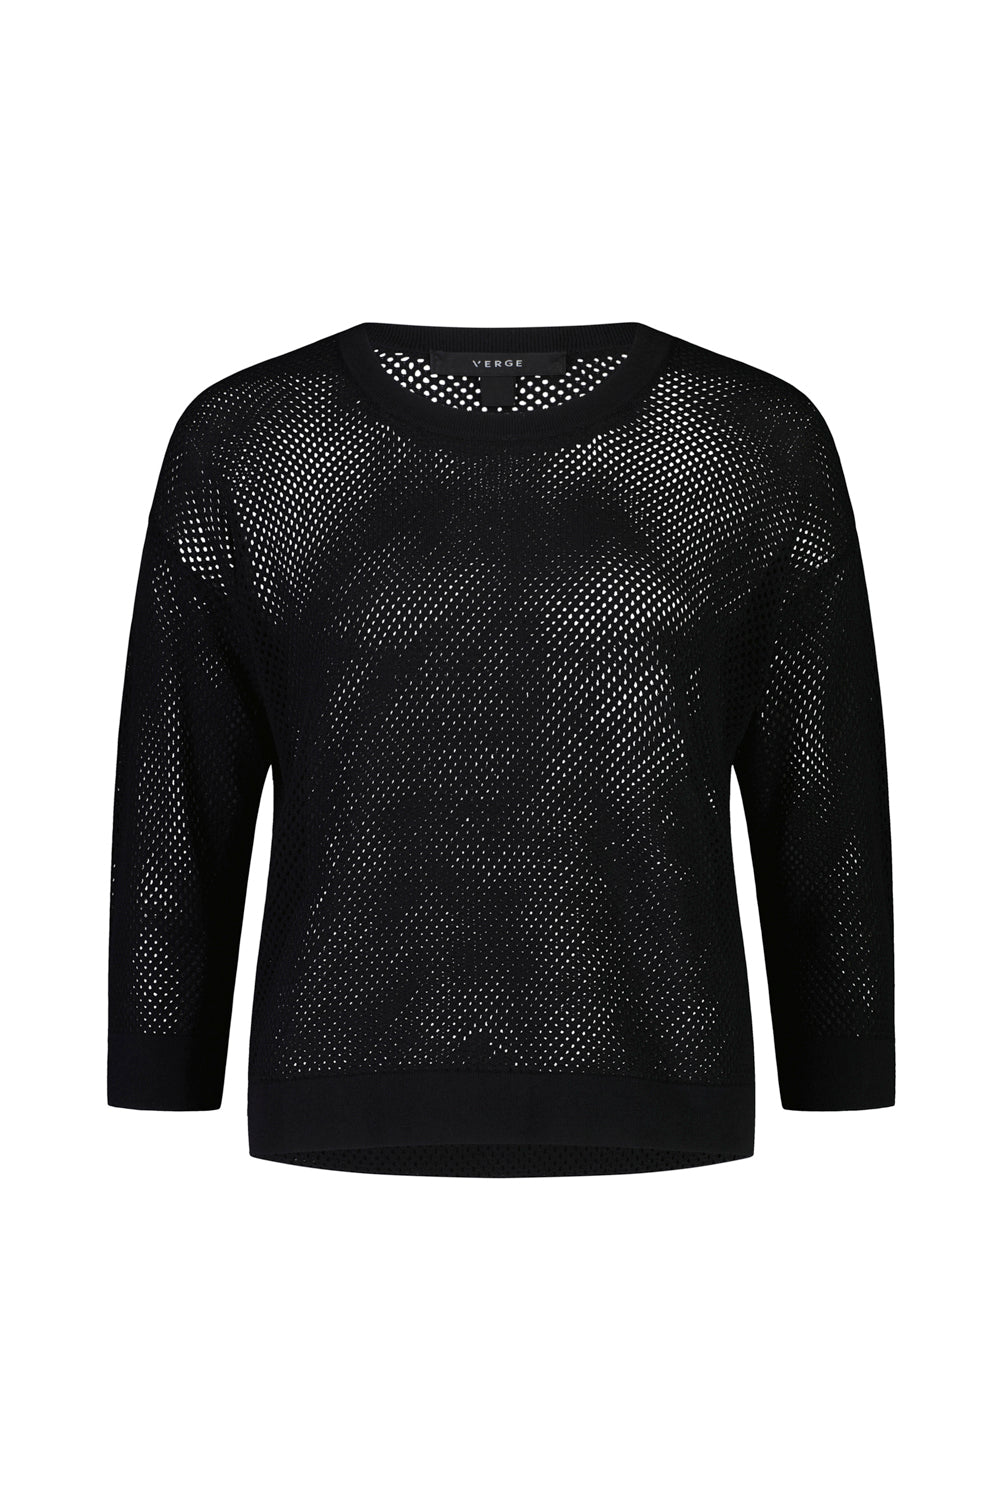 Cedar Sweater - Black - Sweater VERGE